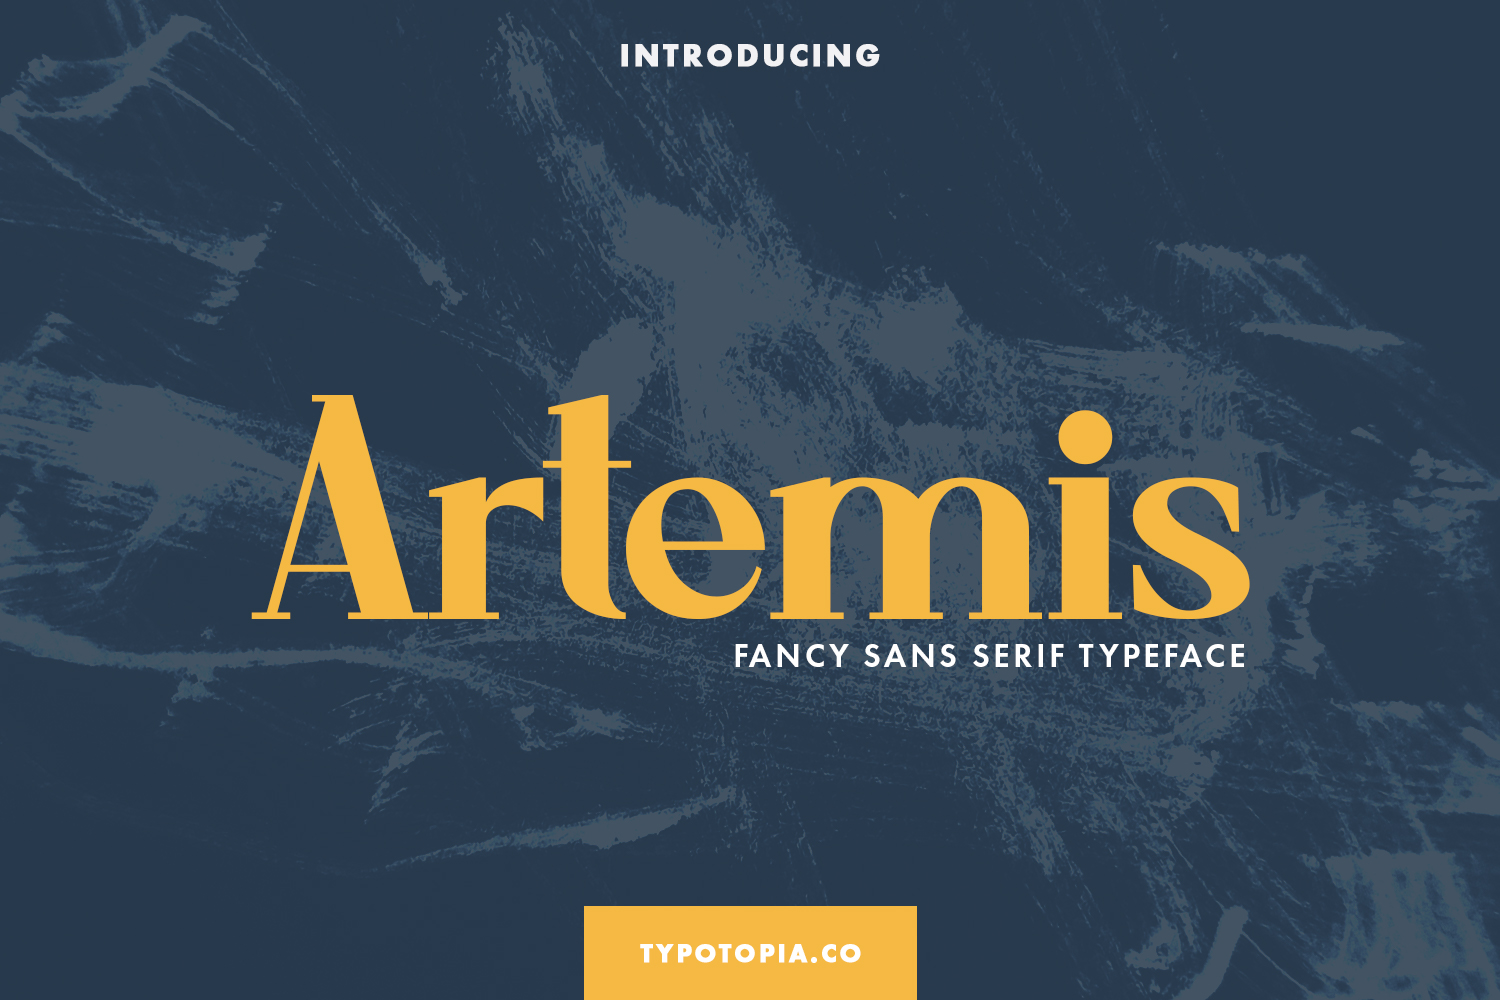 Artemis Fancy Sans Serif Typeface